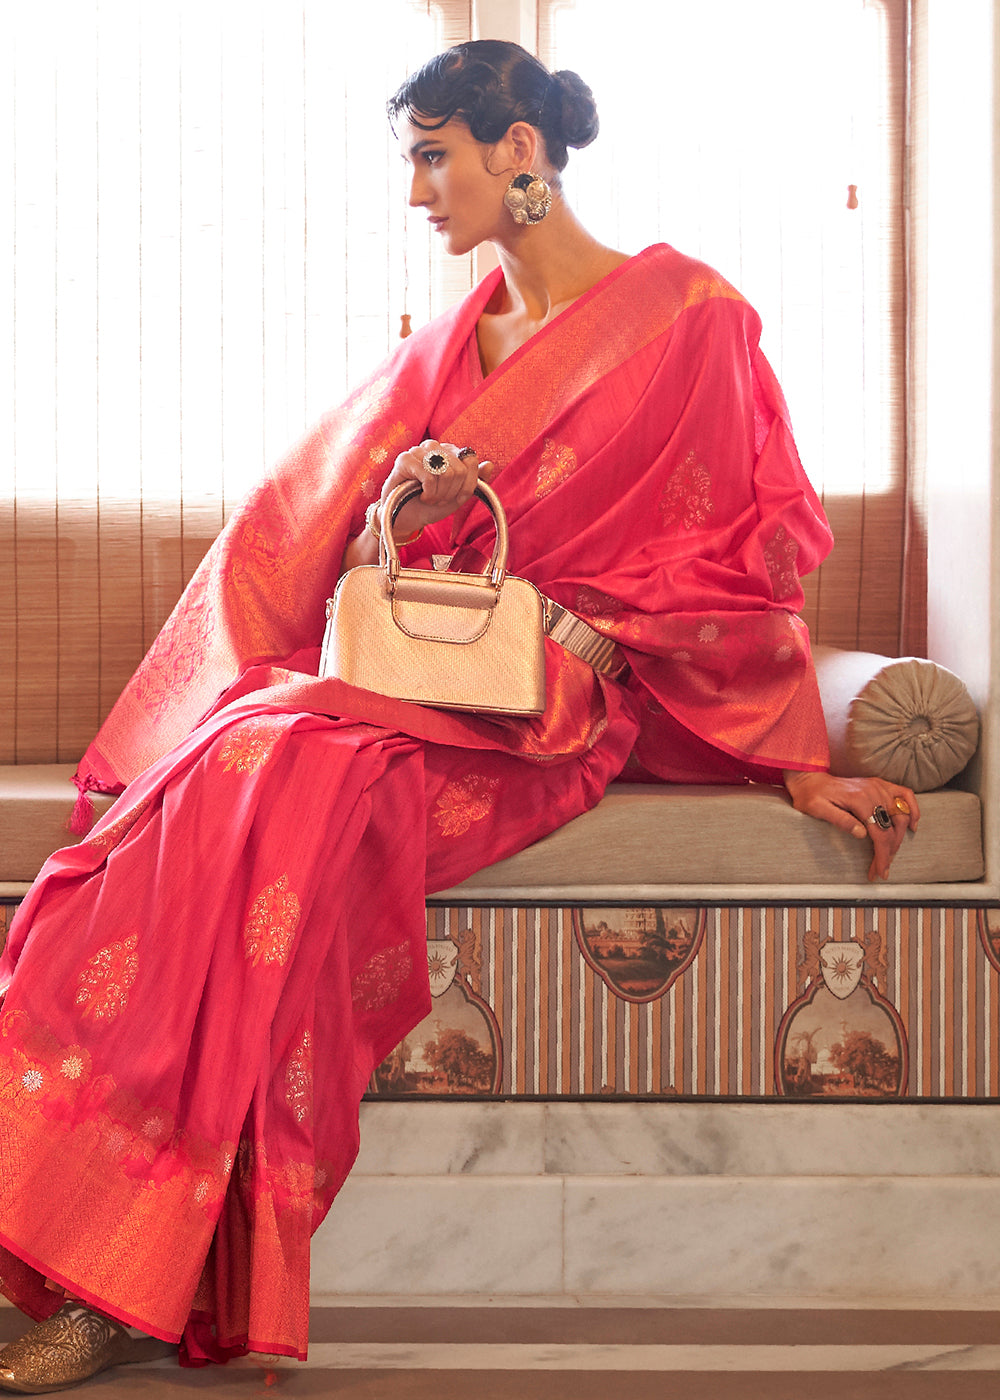 Buy Now Dior Pink Tussar Banarasi Silk Designer Saree Online in USA, UK, Canada & Worldwide at Empress Clothing. 